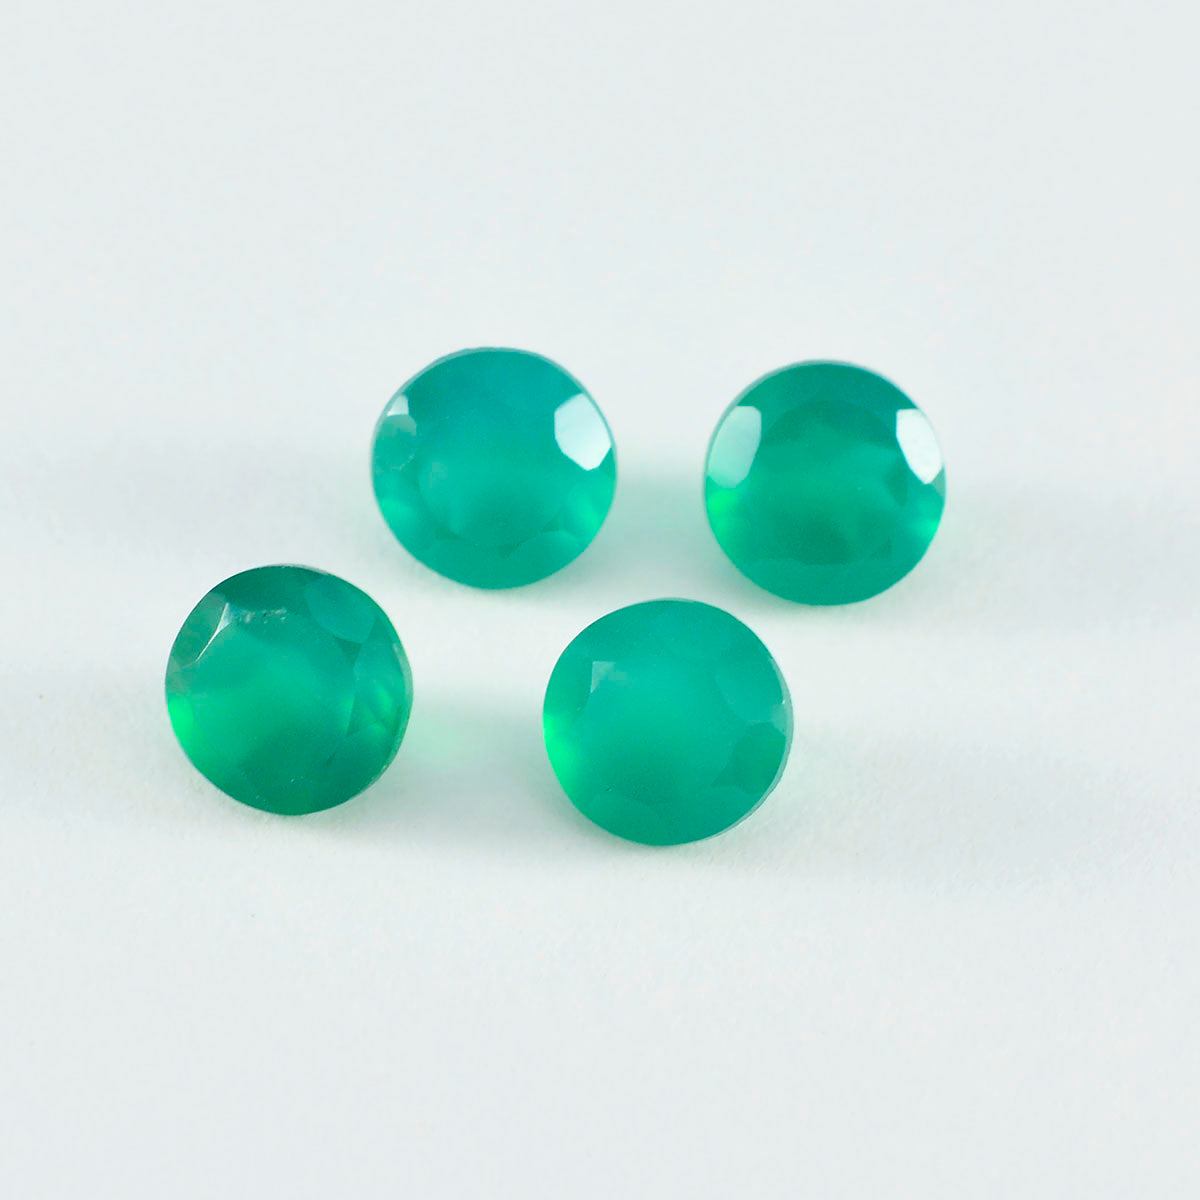 Riyogems 1 pièce d'onyx vert véritable à facettes 6x6mm, forme ronde, pierres précieuses de bonne qualité